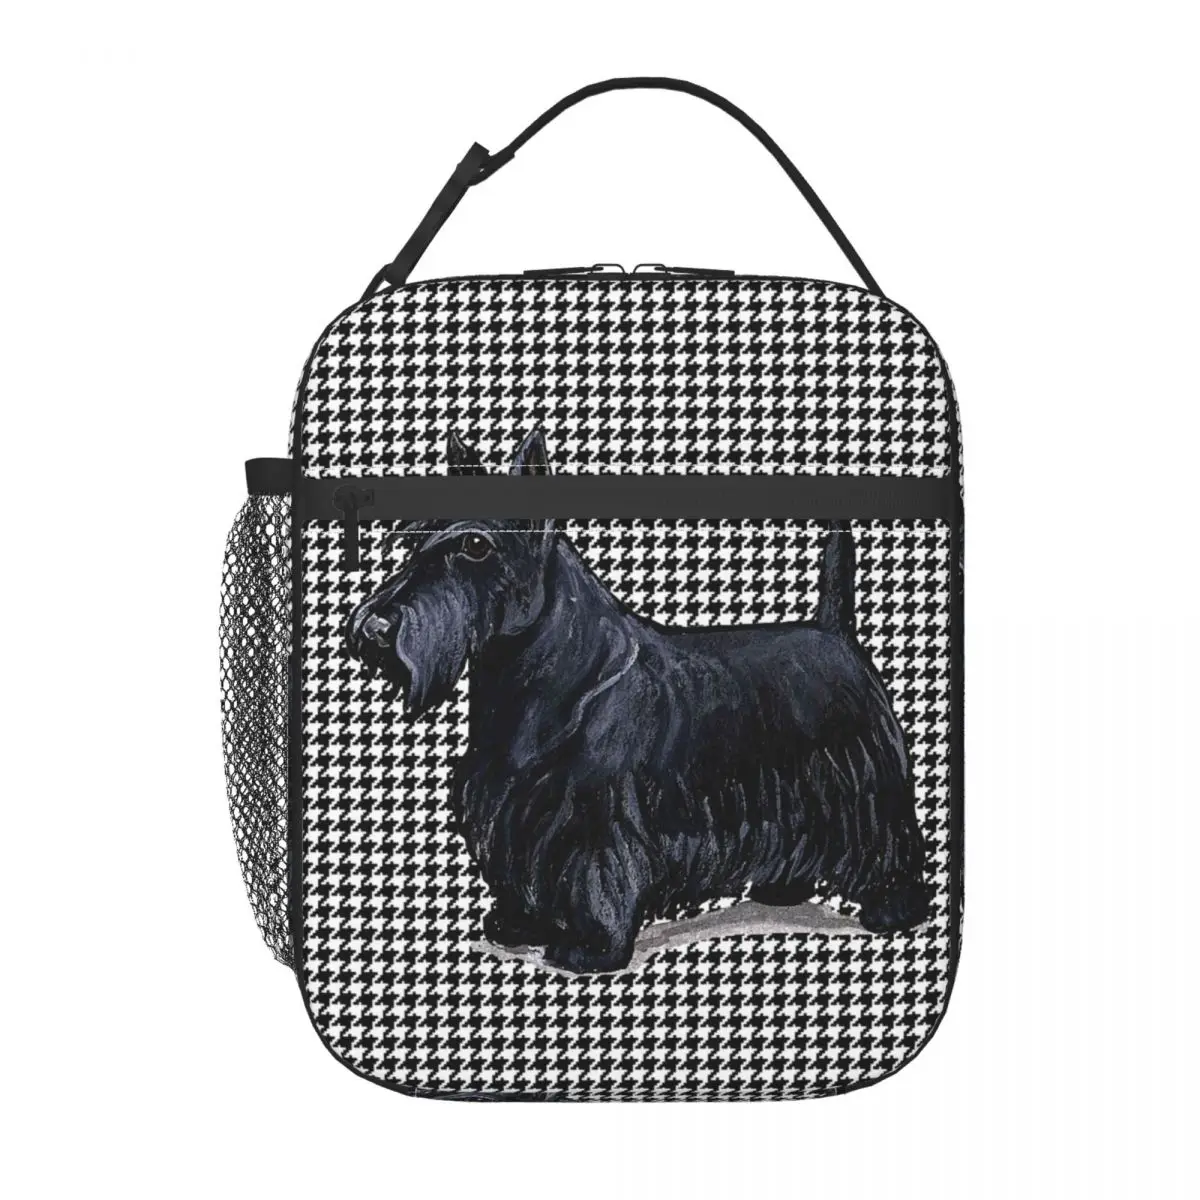 Шотландский терьер Хаундстут Изолированные сумки для ланча Домашнее животное Скотти Собака Портативный Термоохладитель Еда Ланч Бокс Работа Школа Путешествия